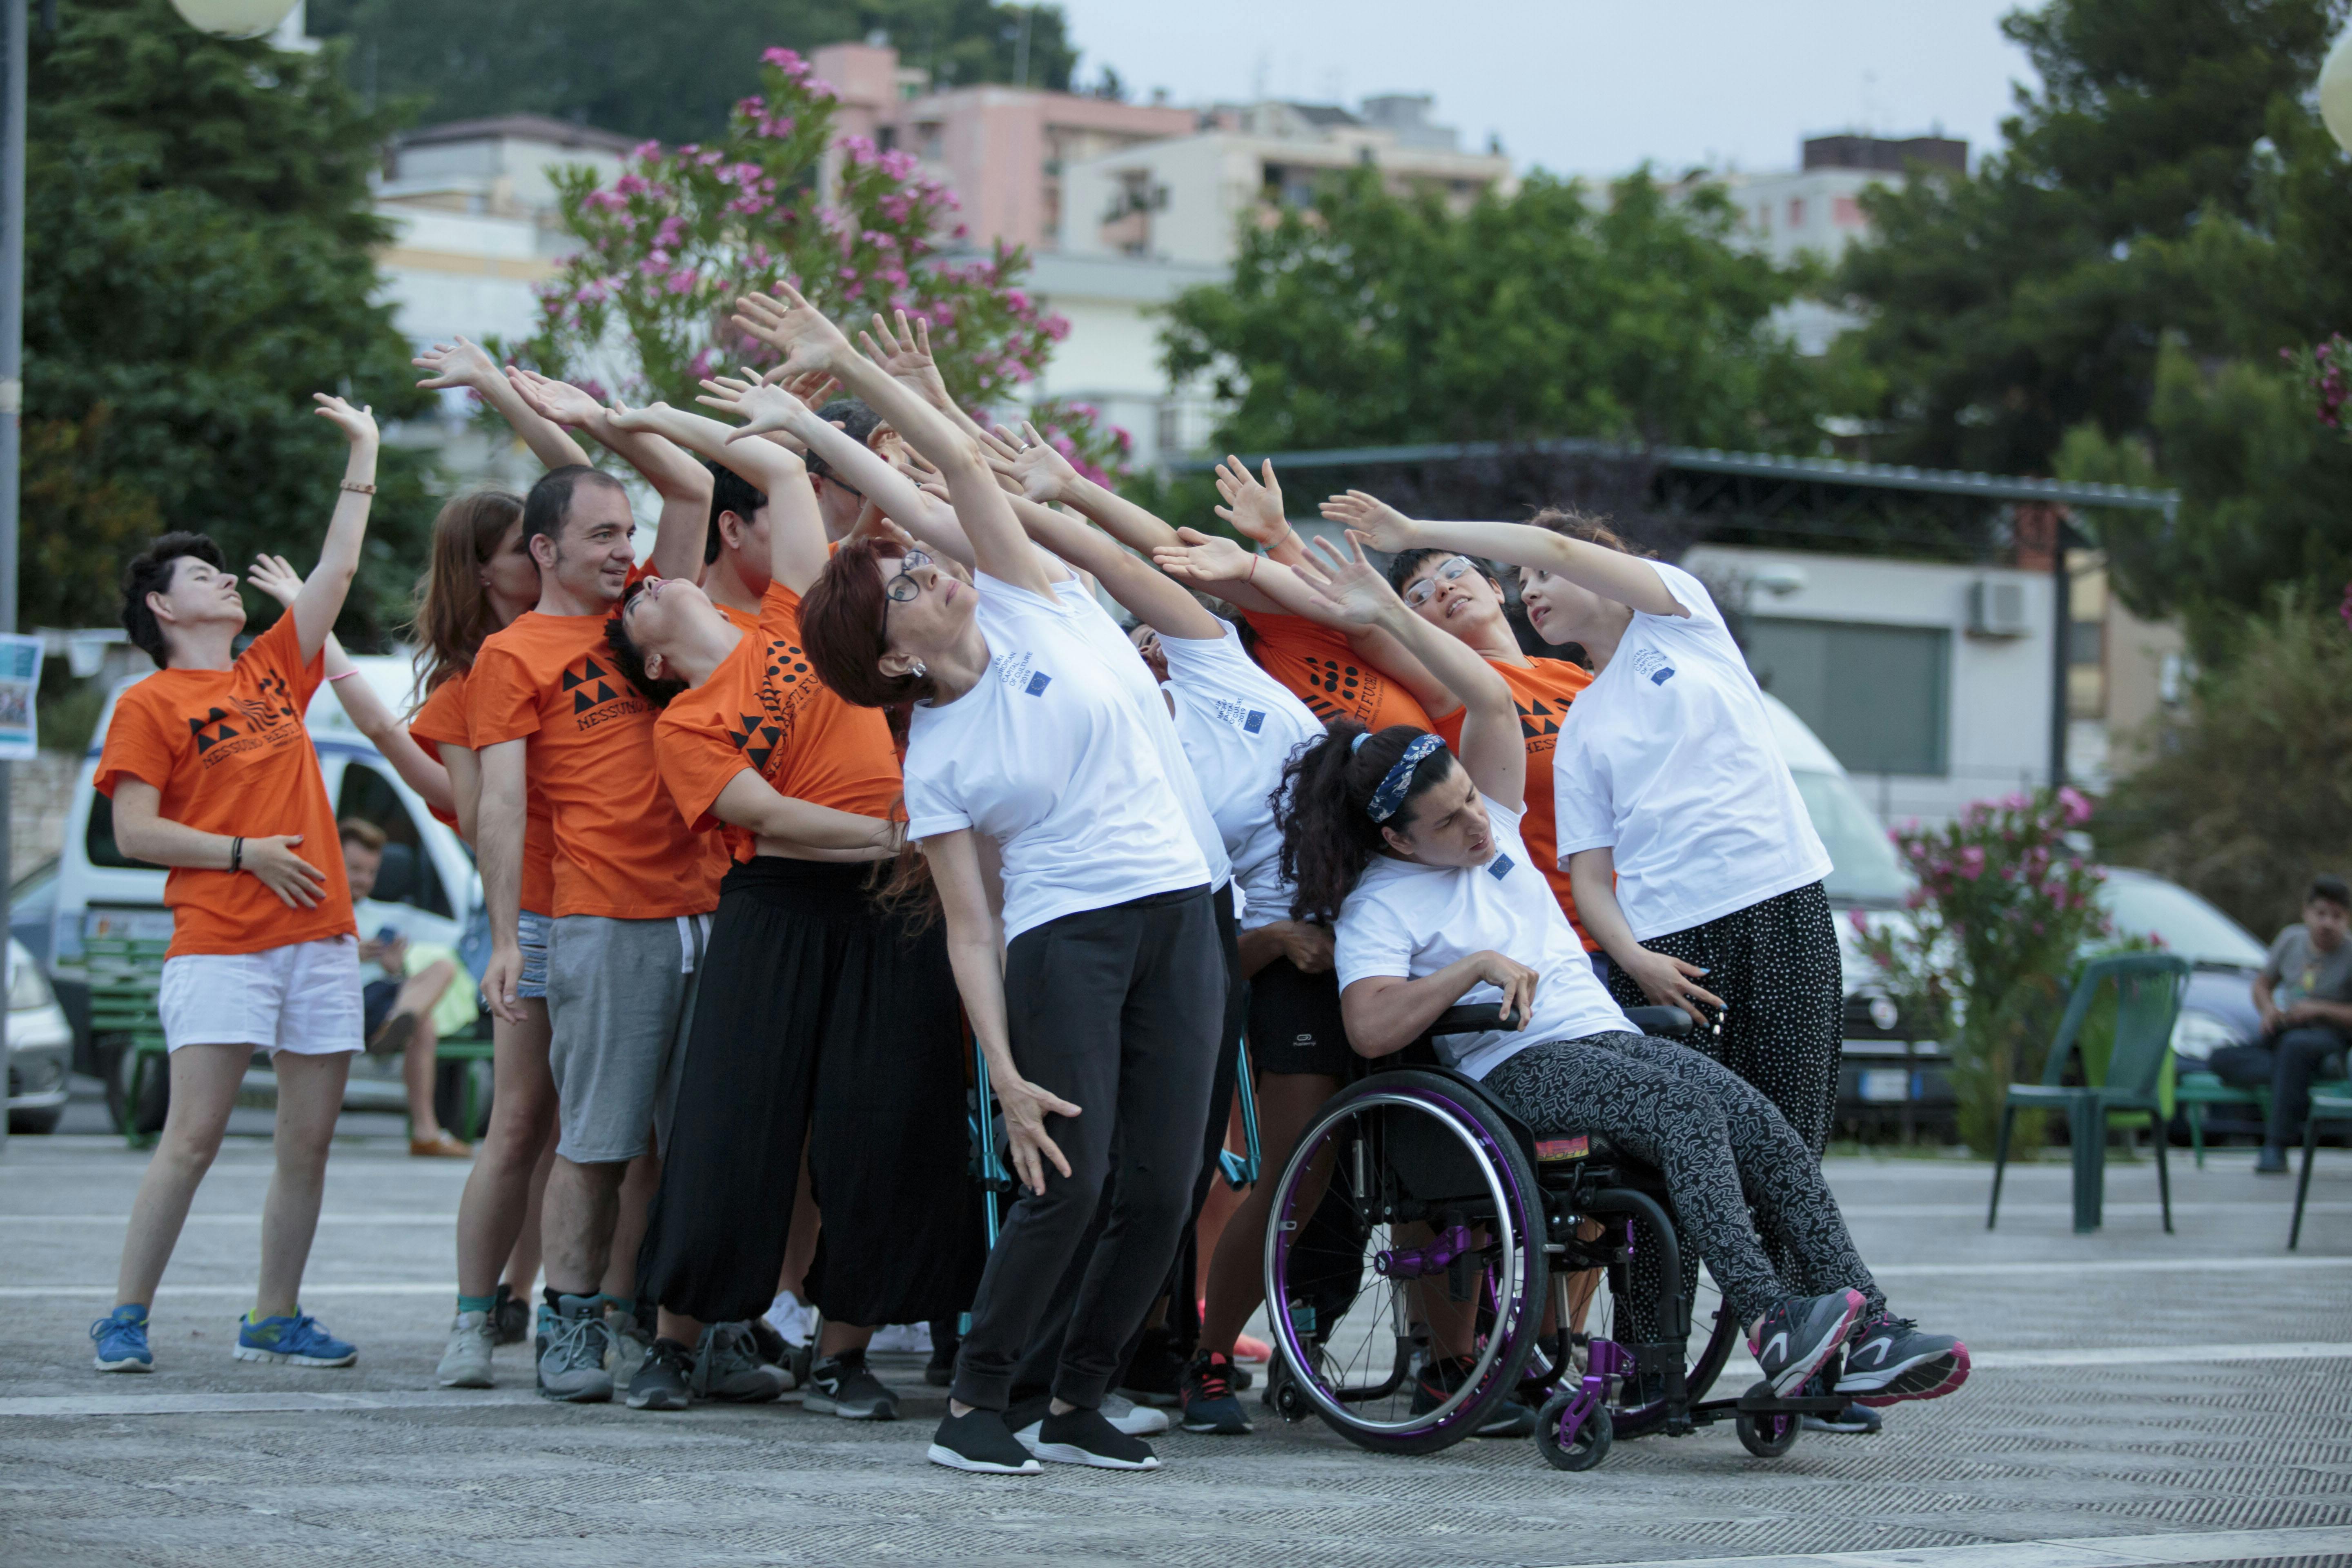 Un gruppo di performer con e senza disabilità durante un'esibizione. Sollevano un braccio verso l'alto inclinando il busto leggermente indietro.